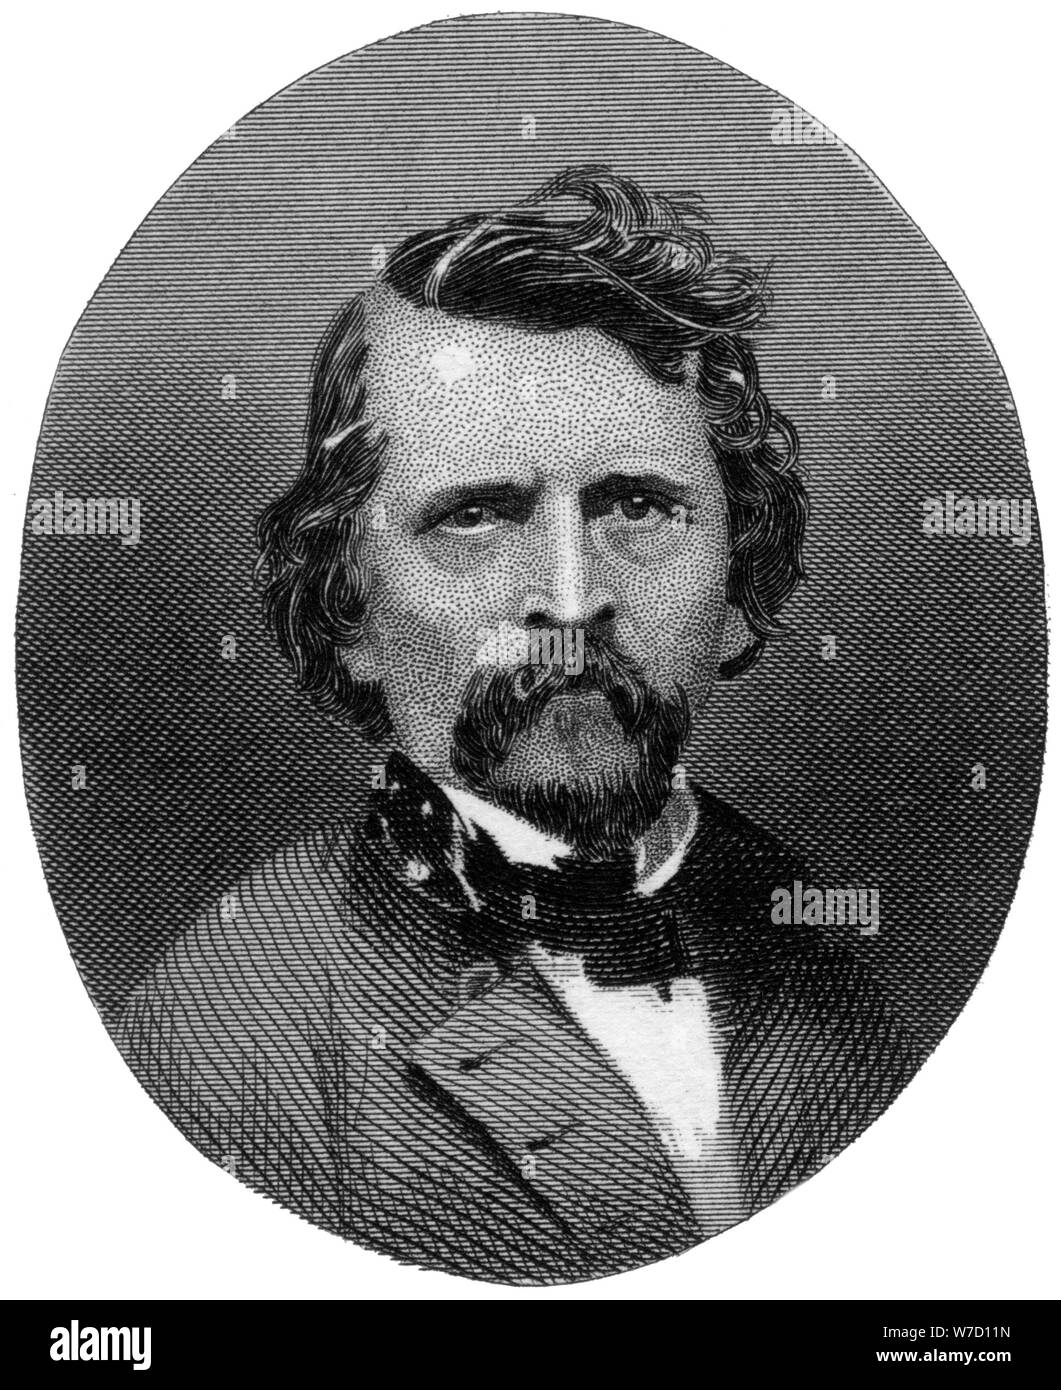 Earl van Dorn, Confederate major-general, 1862-1867.Artist: J Rogers Stock Photo